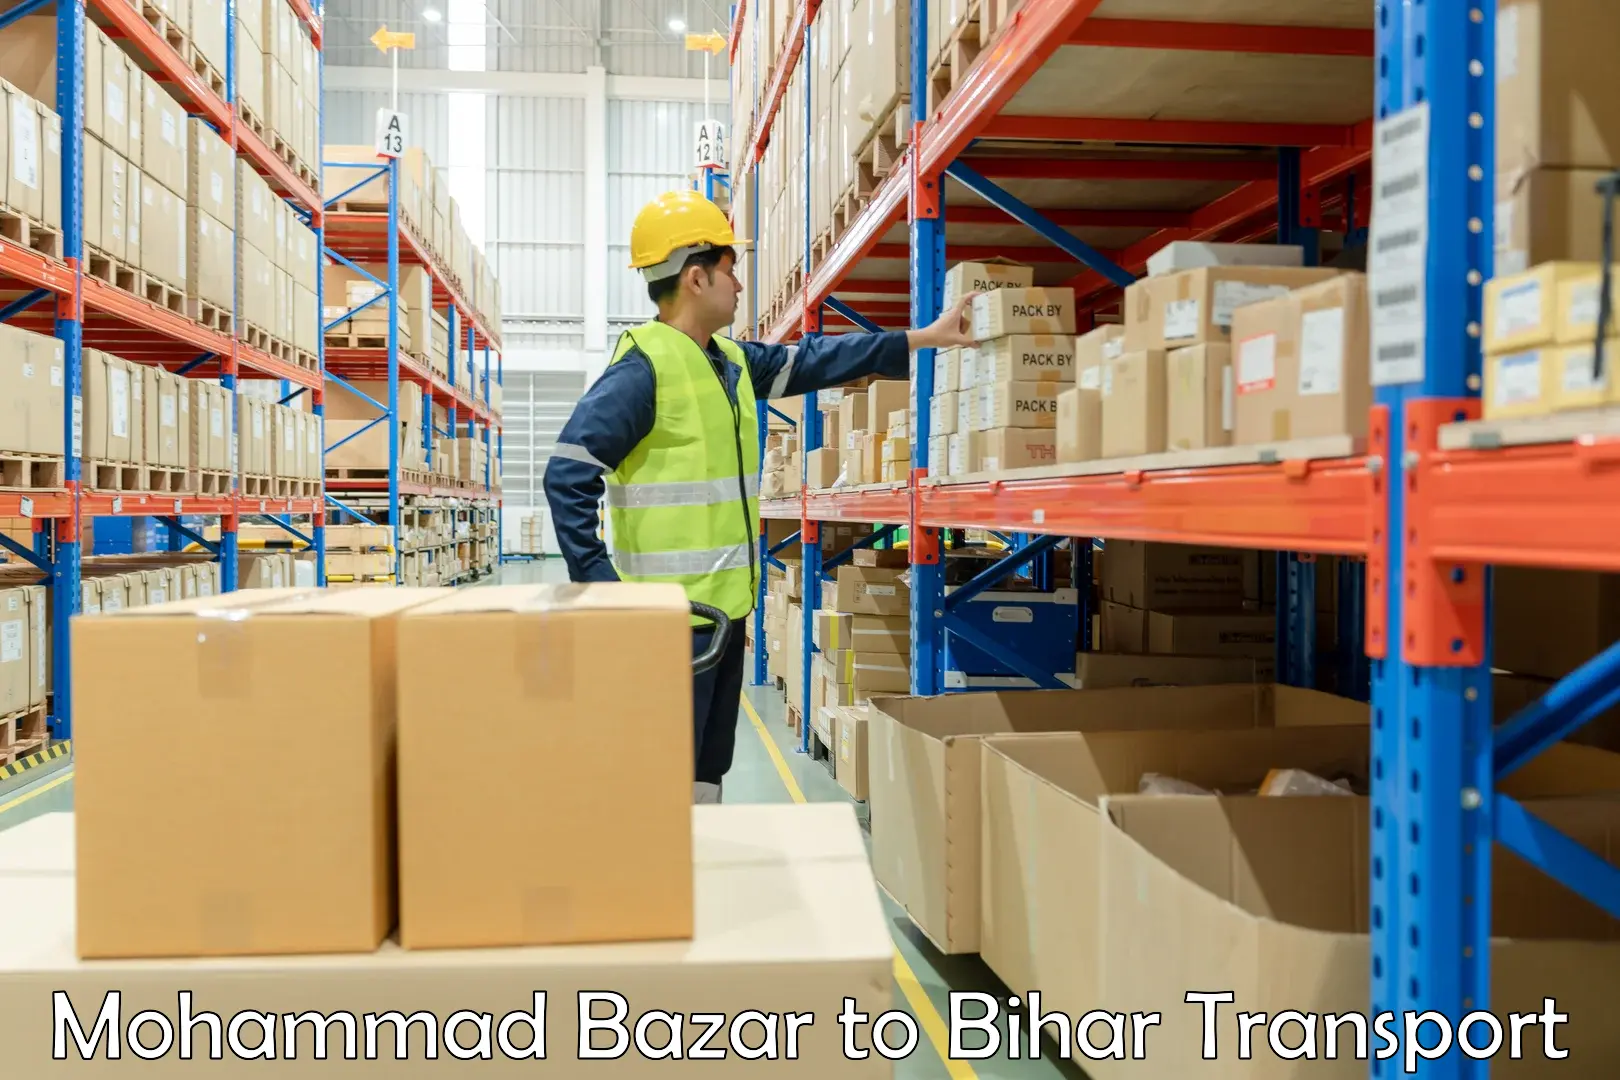 Transportation services Mohammad Bazar to Bihar